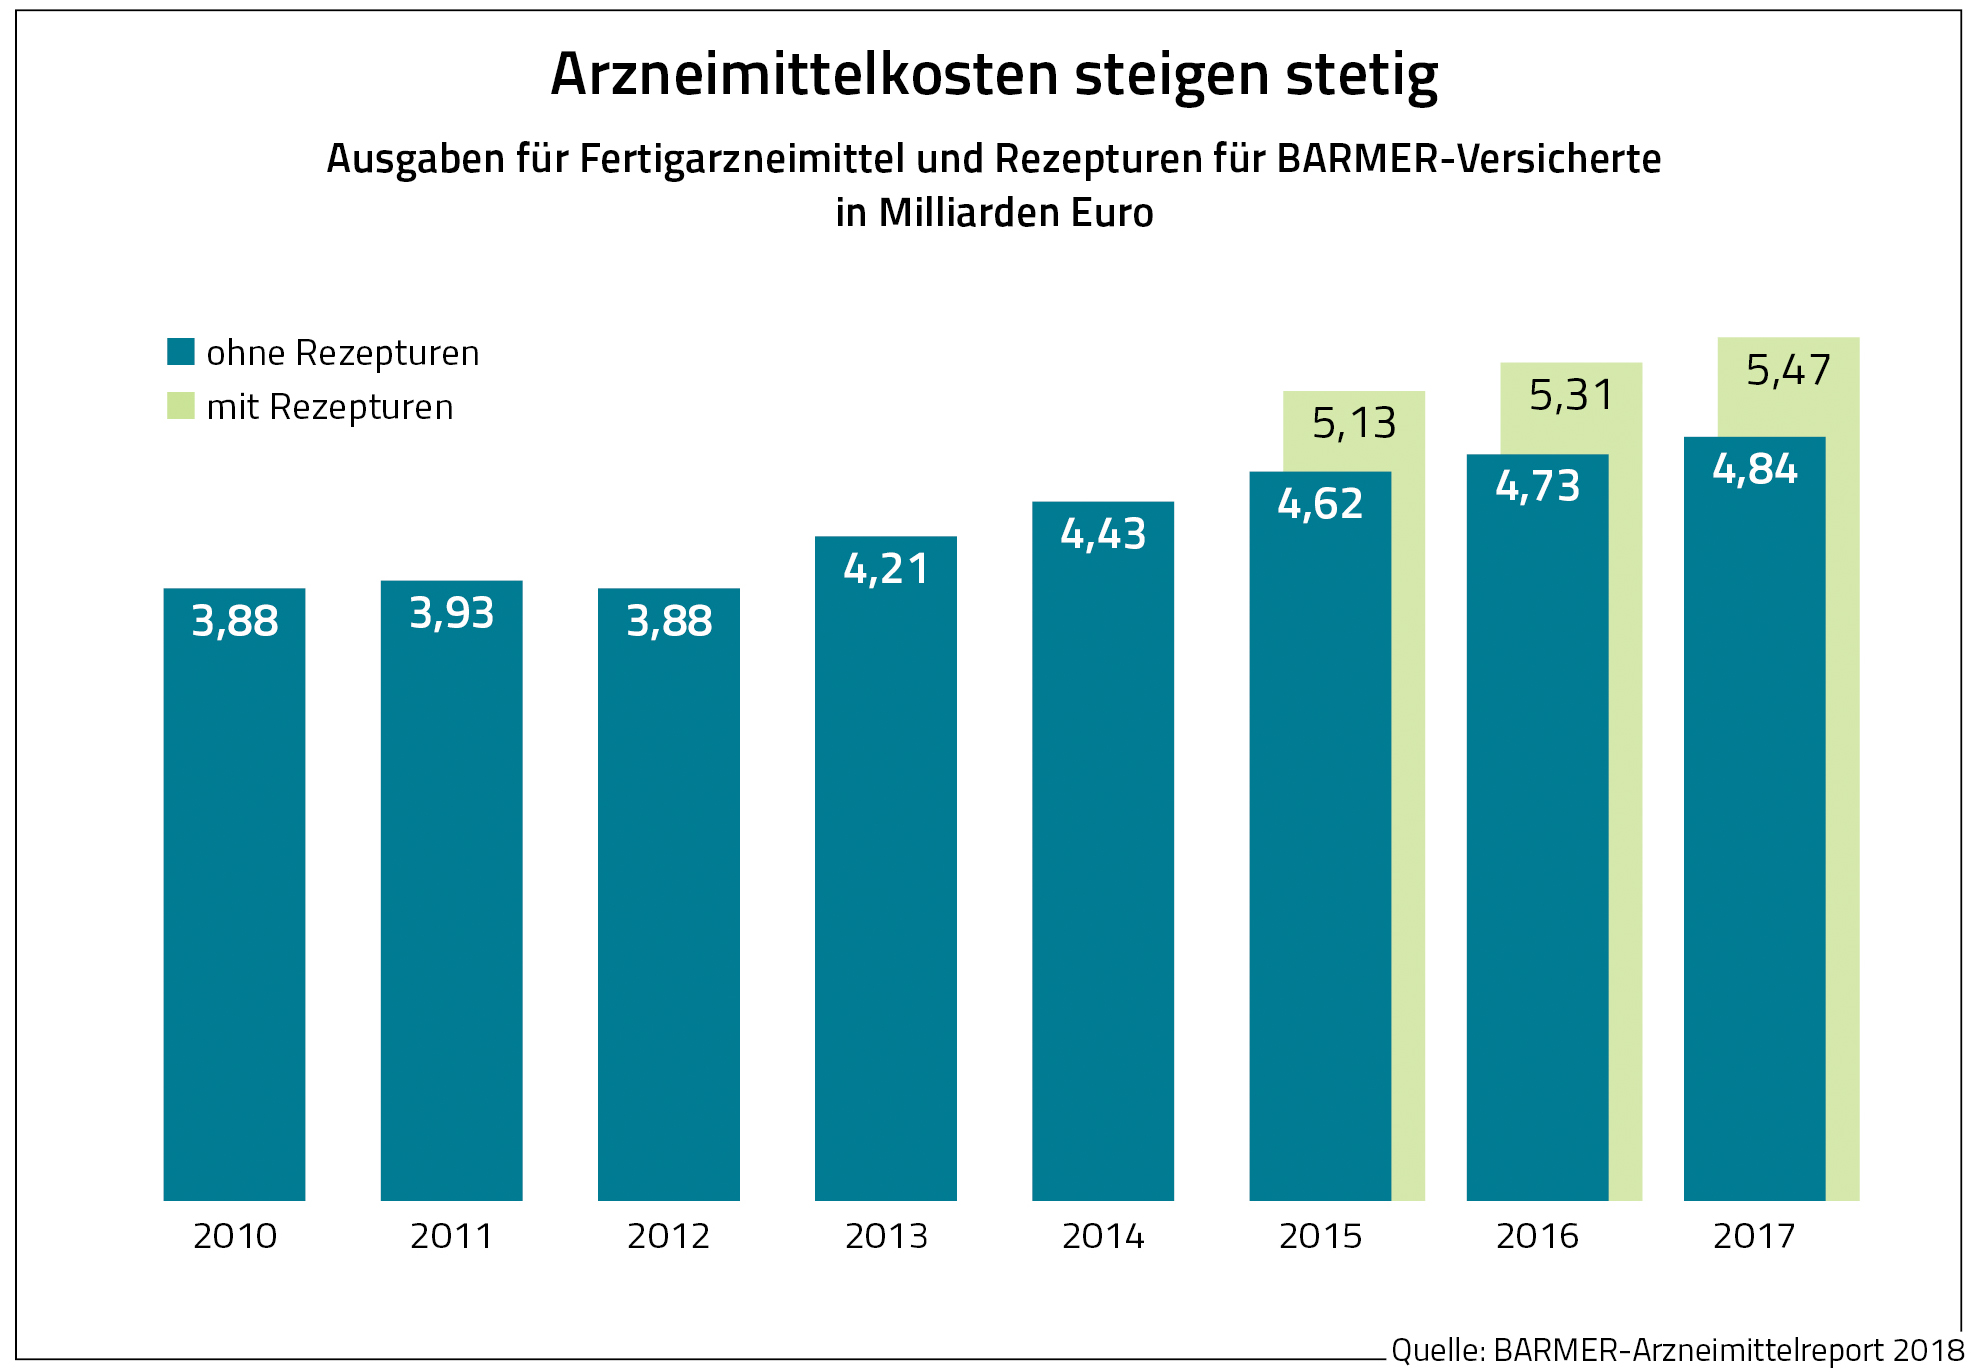 Die Grafik zeigt die Ausgaben für Fertigarzneimittel und Rezepturen für Barmer-Versicherte in Milliarden Euro